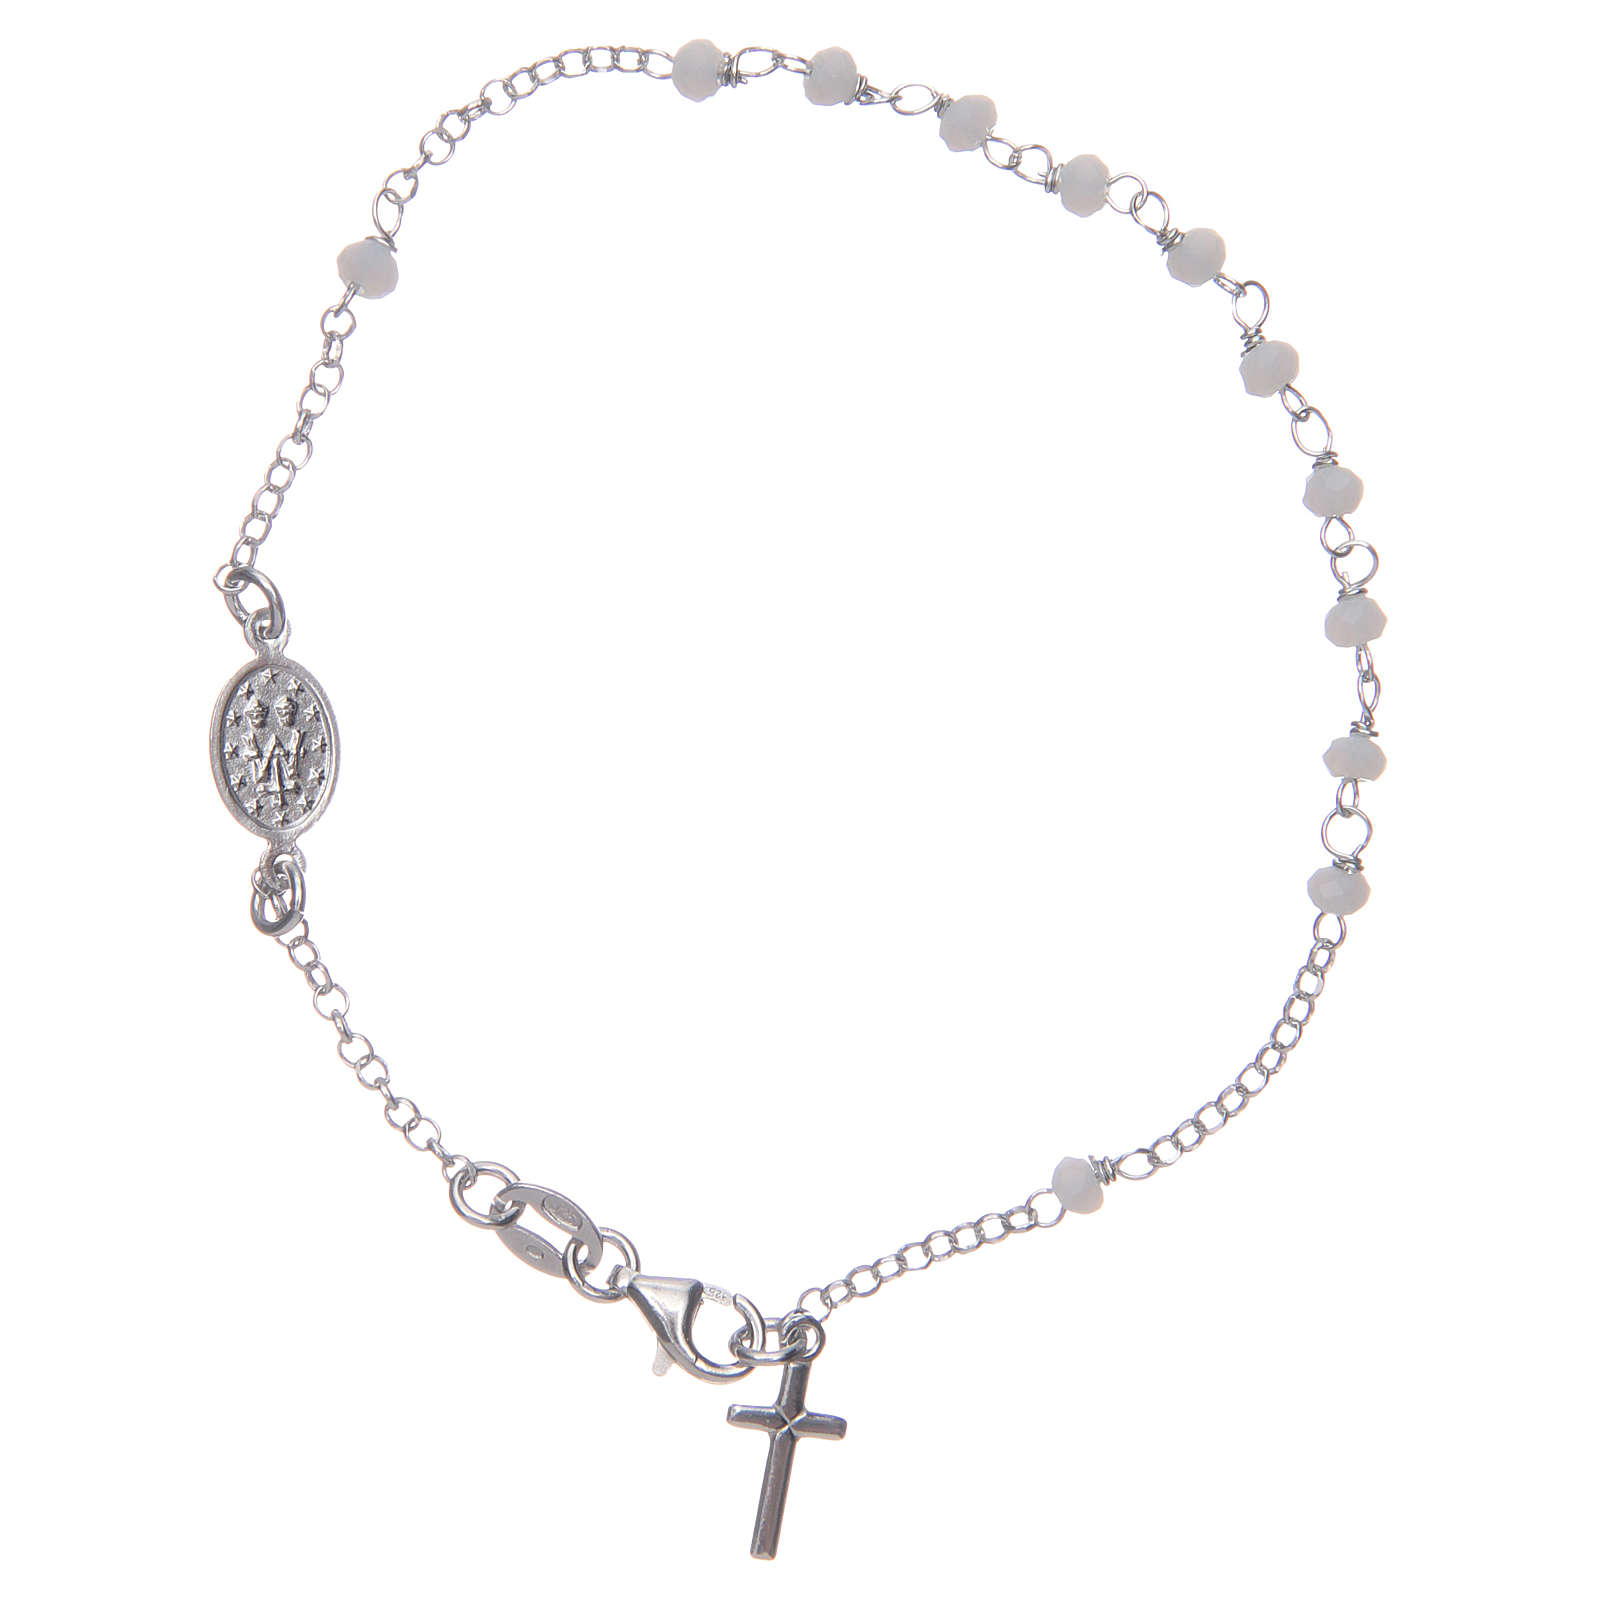 Rosary bracelet white 925 sterling silver | online sales on HOLYART.co.uk